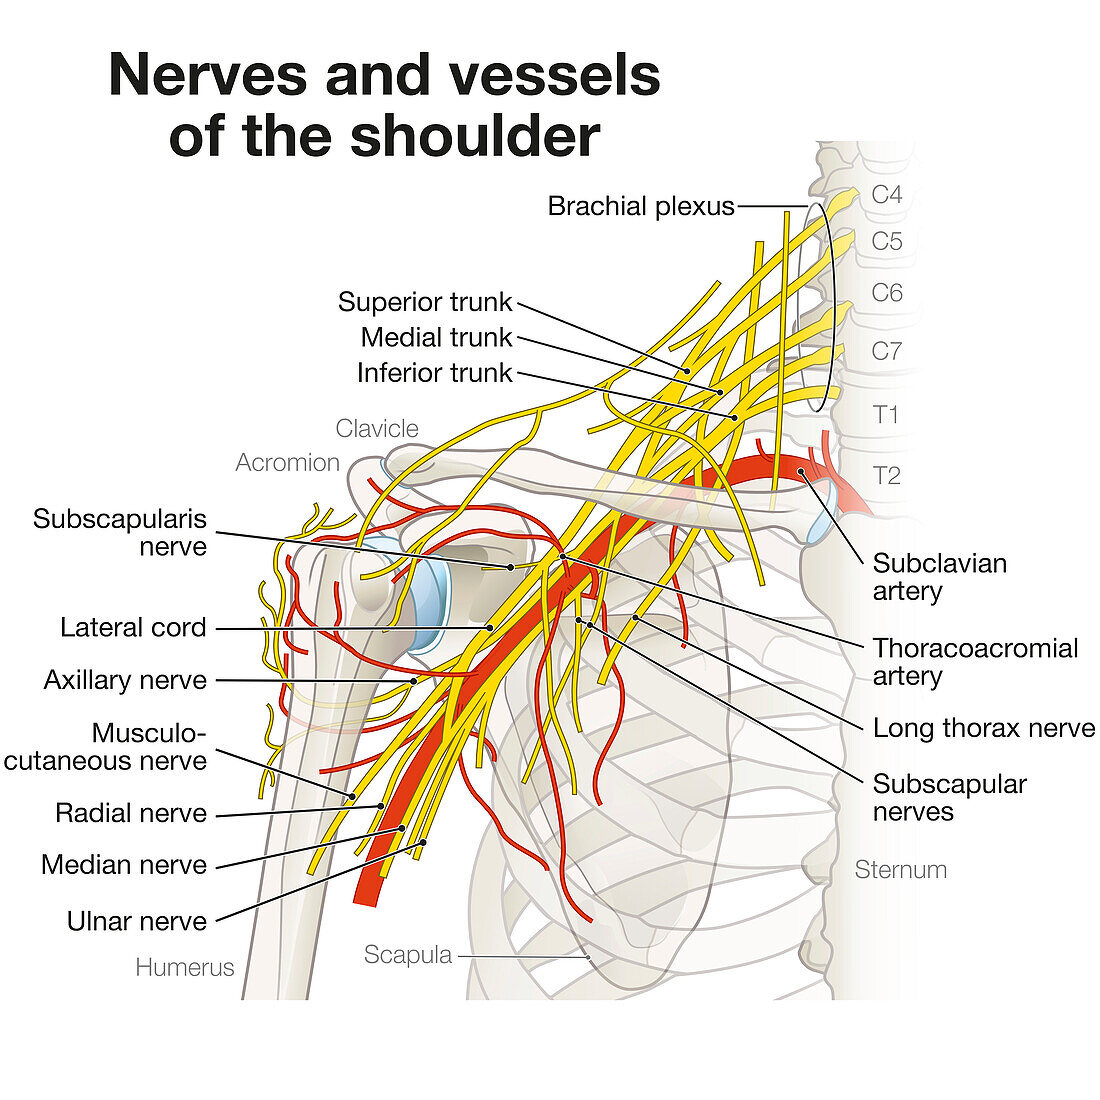 Nerves and vessels of the shoulder, illustration